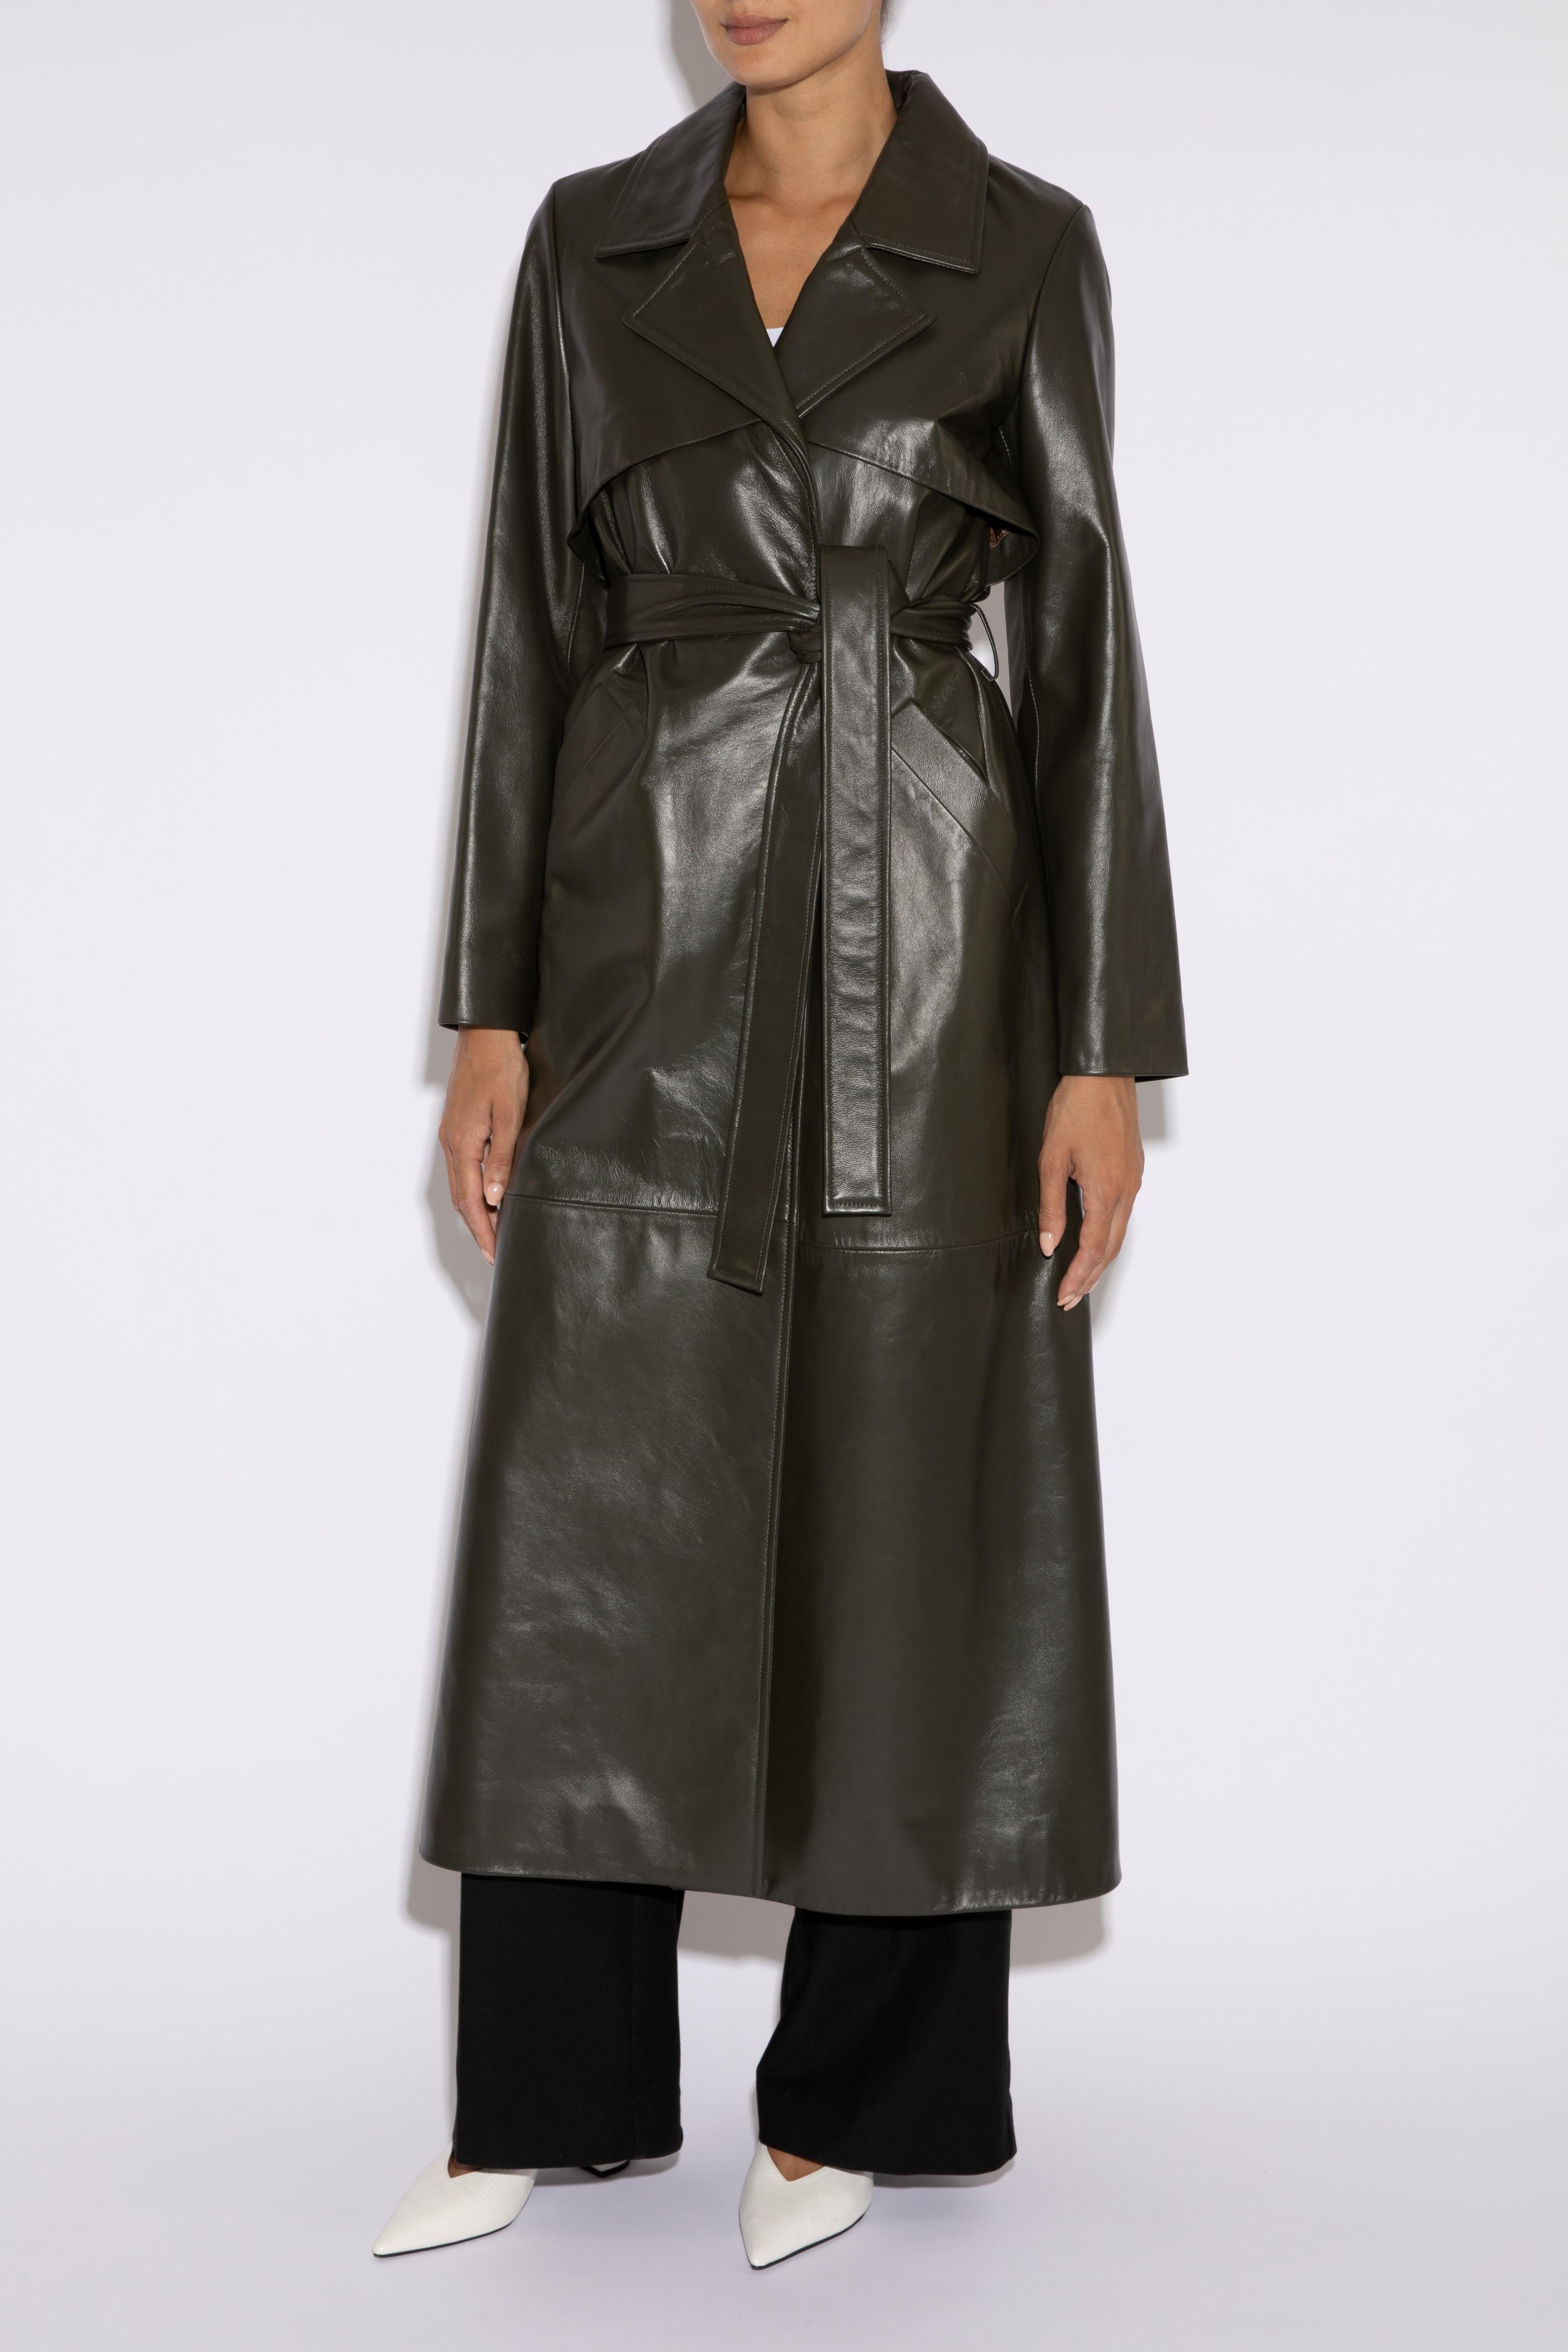 Verheyen Londoner Leder-Trenchcoat in dunklem Khakigrün - Größe Uk 14 Damen im Angebot